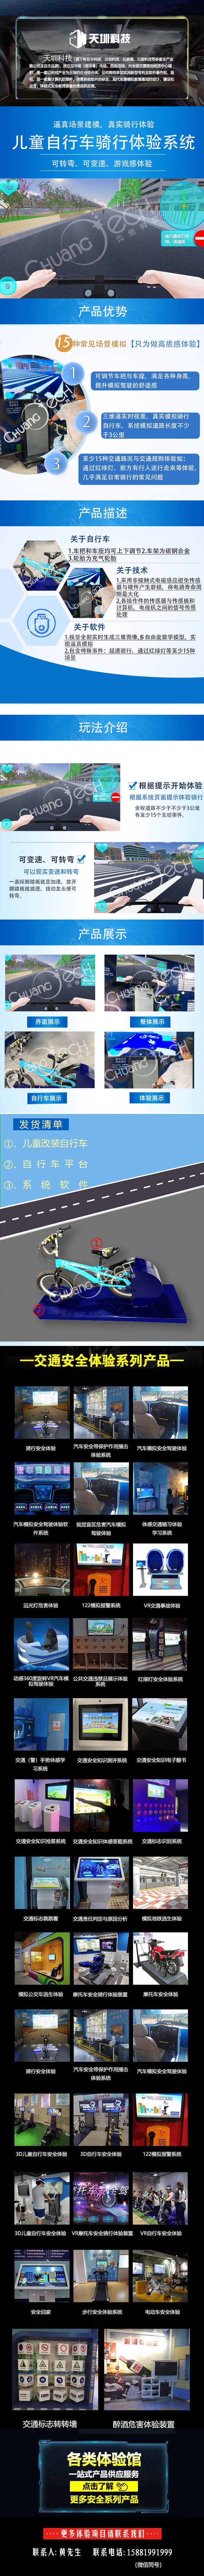 交通安全体验馆&儿童自行车骑行系统产品介绍.jpg